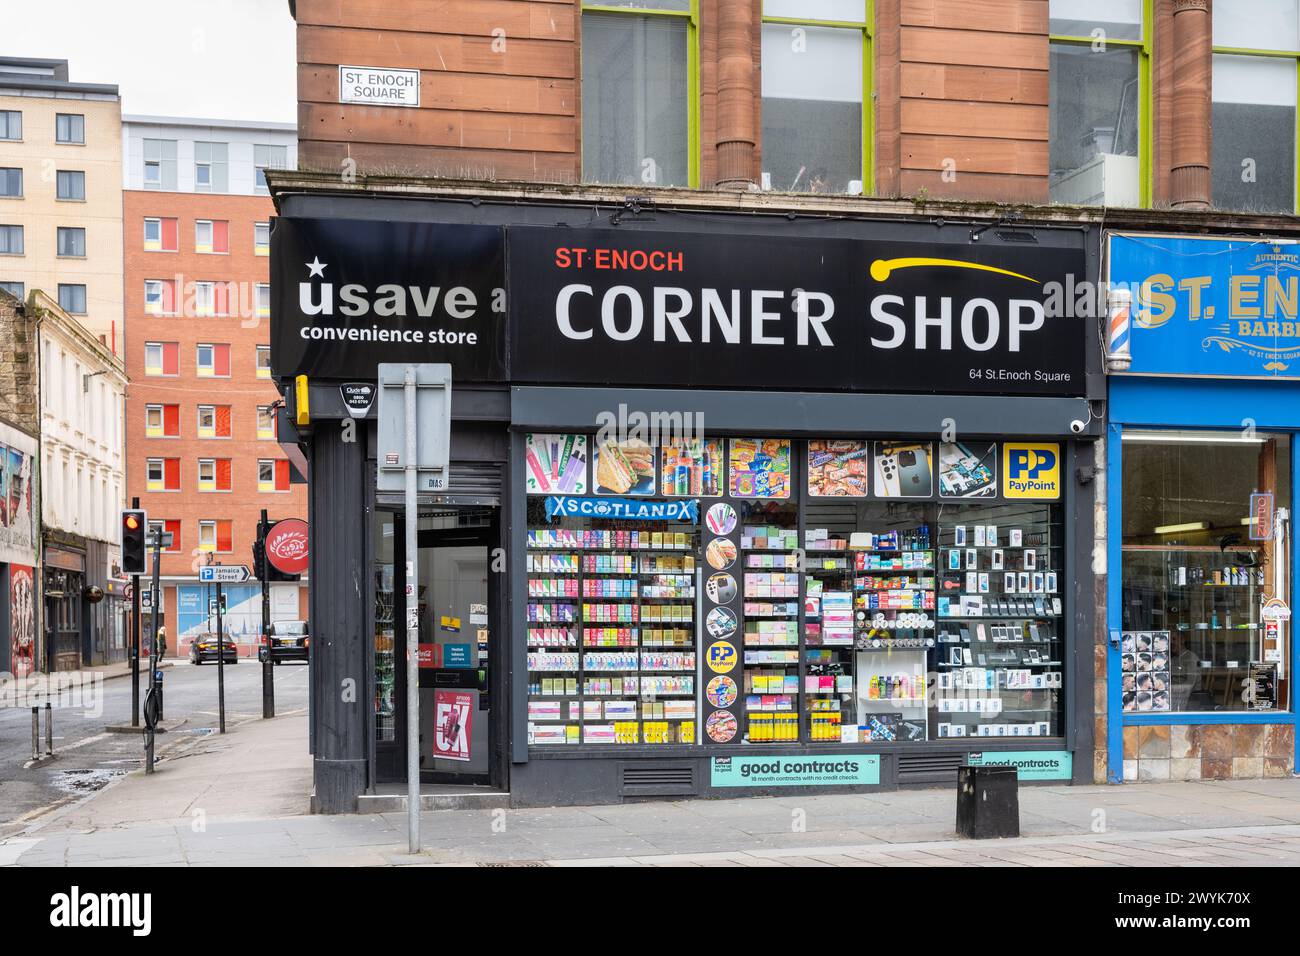 Tienda Esquina Glasgow - Usave St Enoch Corner Shop, Glasgow, Escocia, Reino Unido Foto de stock